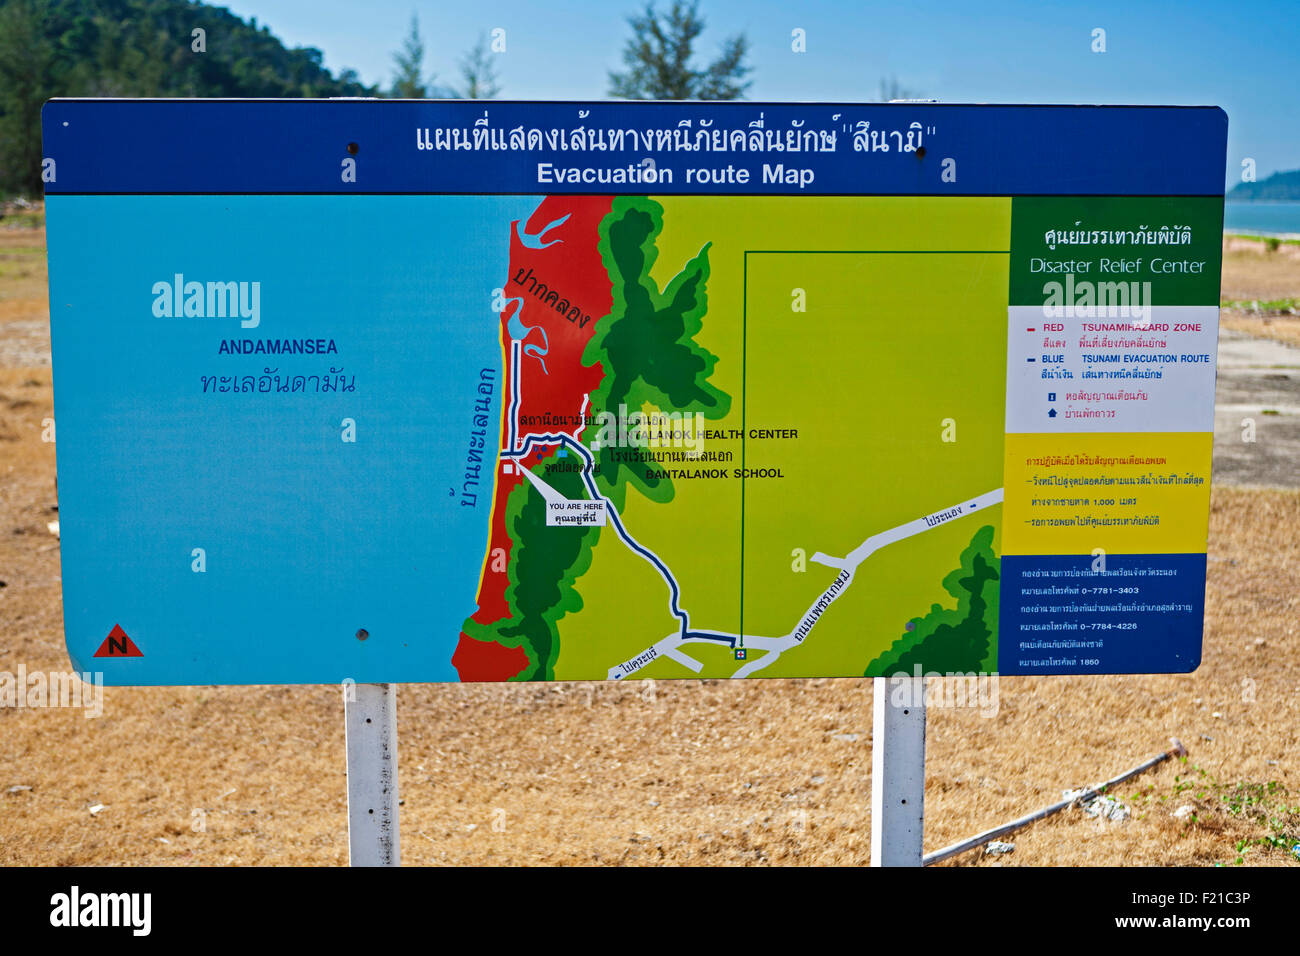 Wetter, Klima, Tsunami Evakuierung Route Zeichen, Thailand Stockfotografie  - Alamy